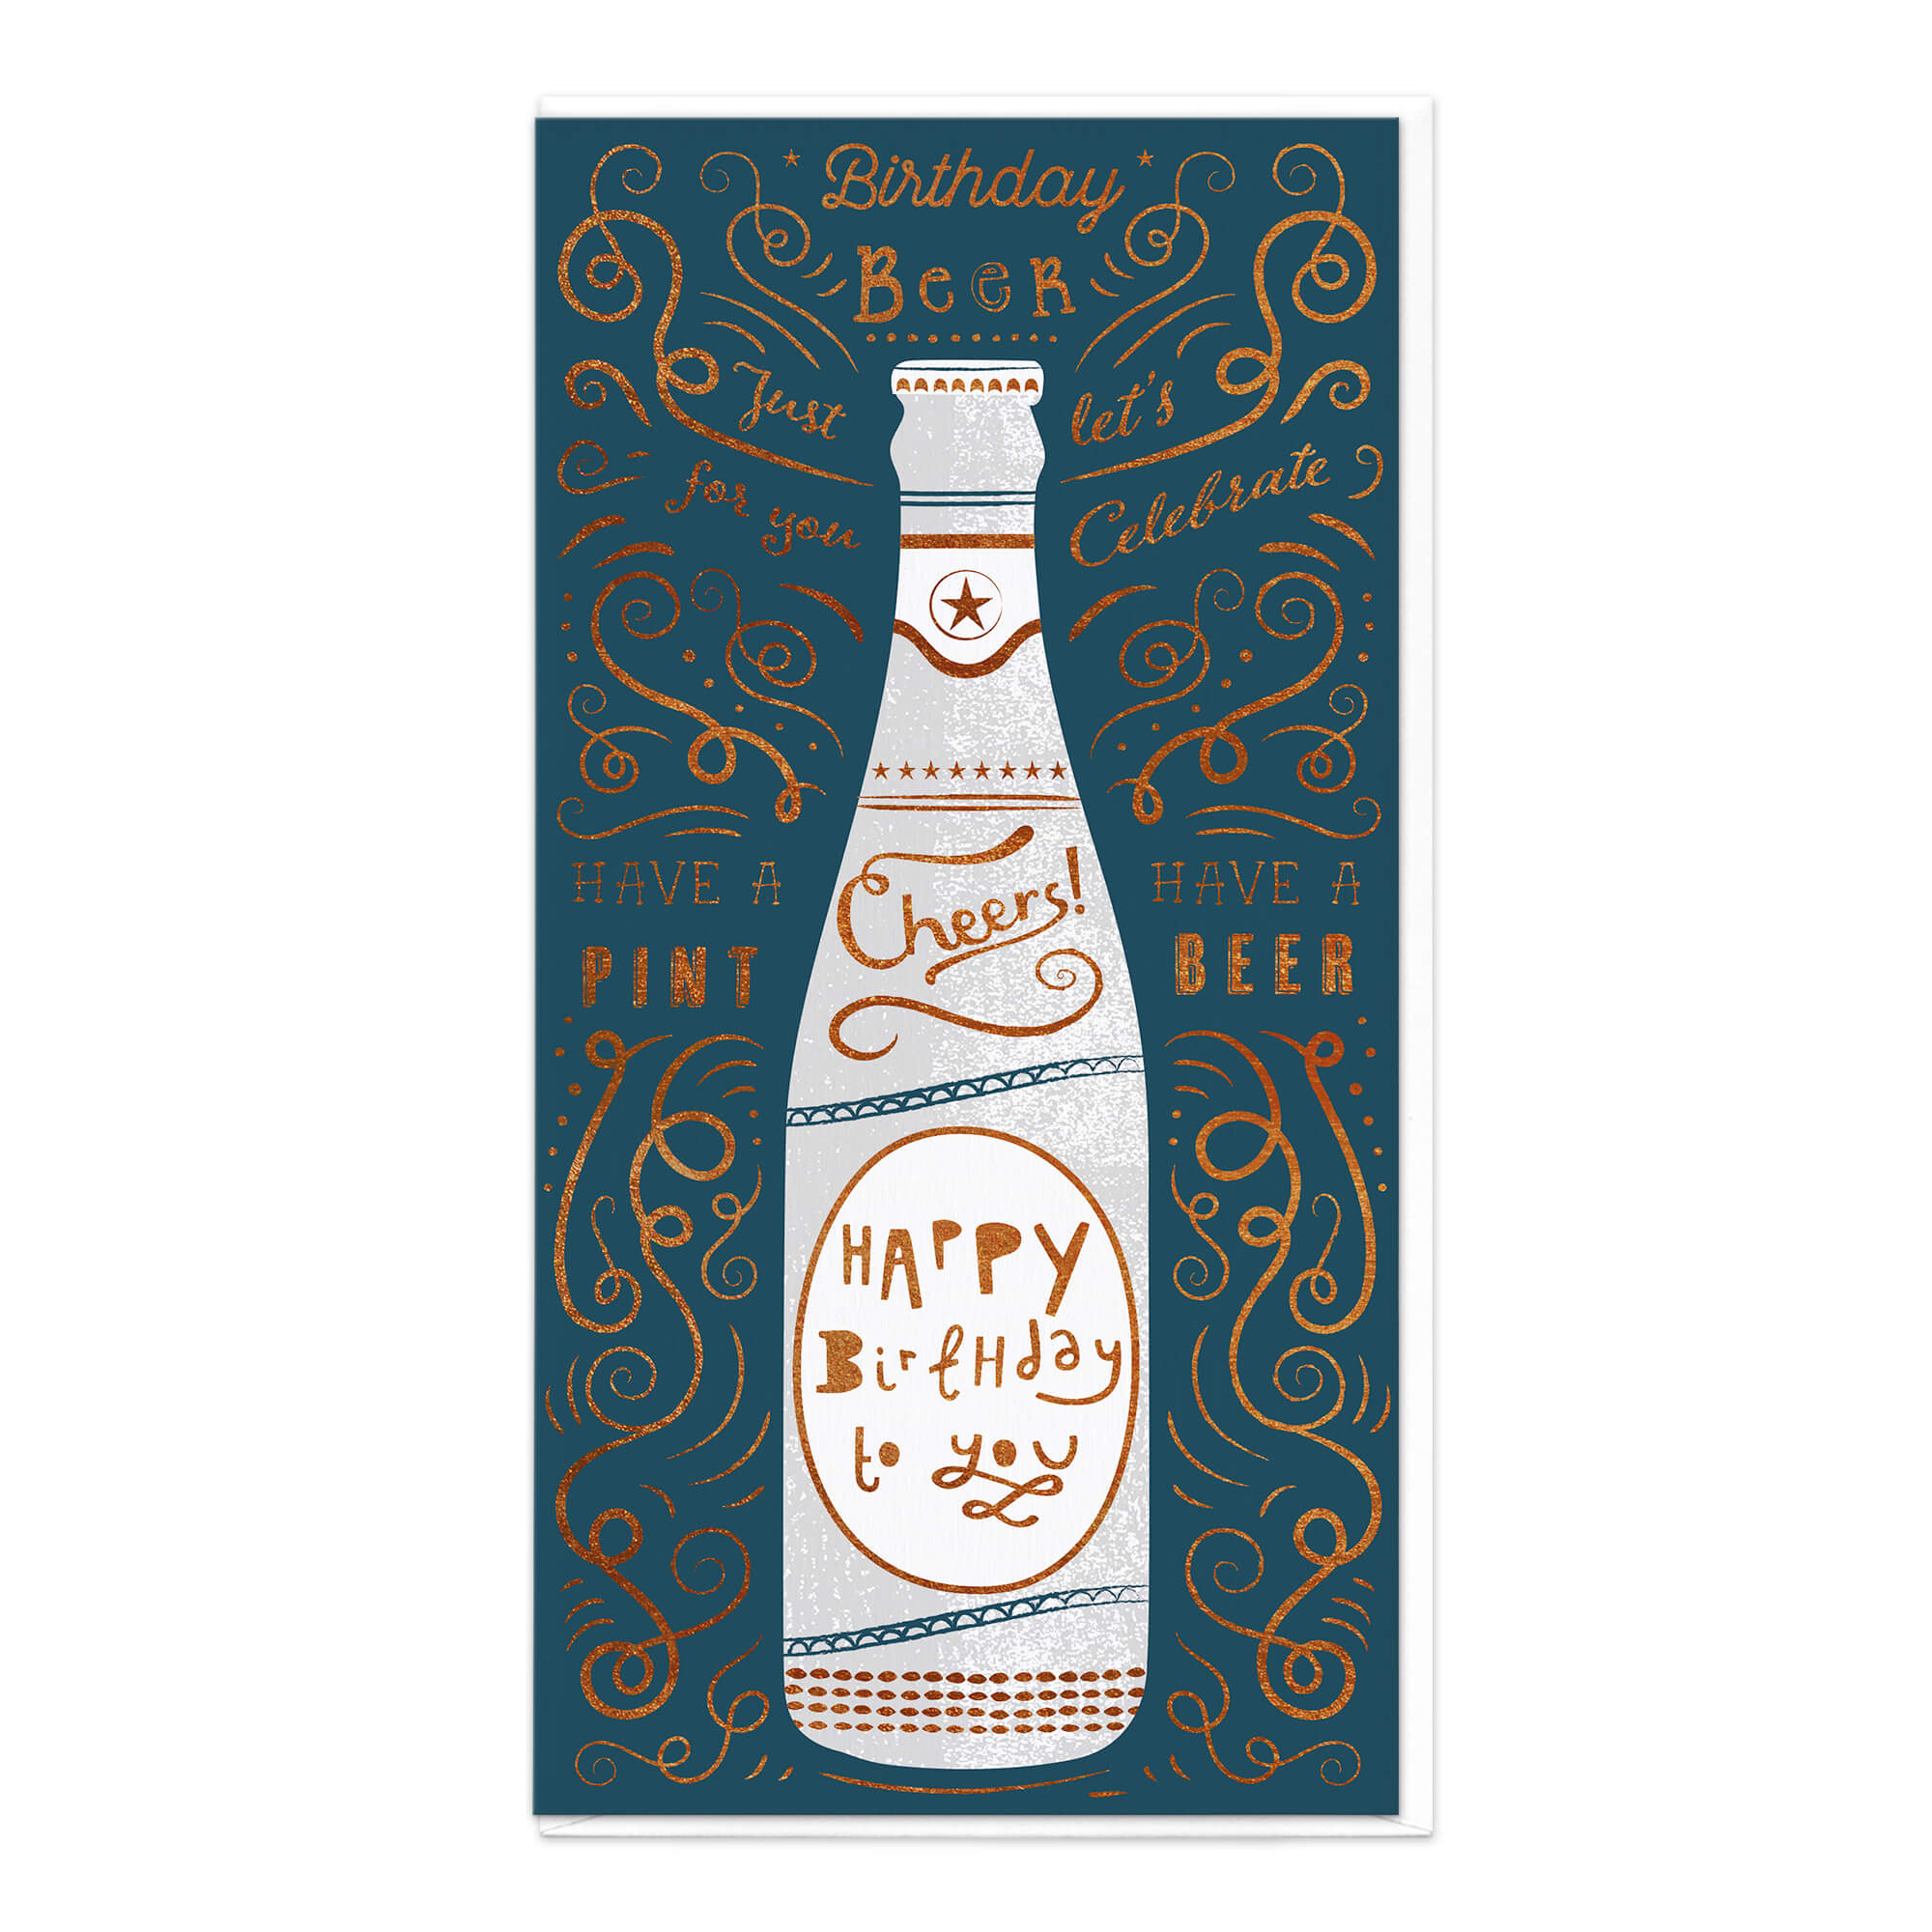 Birthday Beer Birthday Card